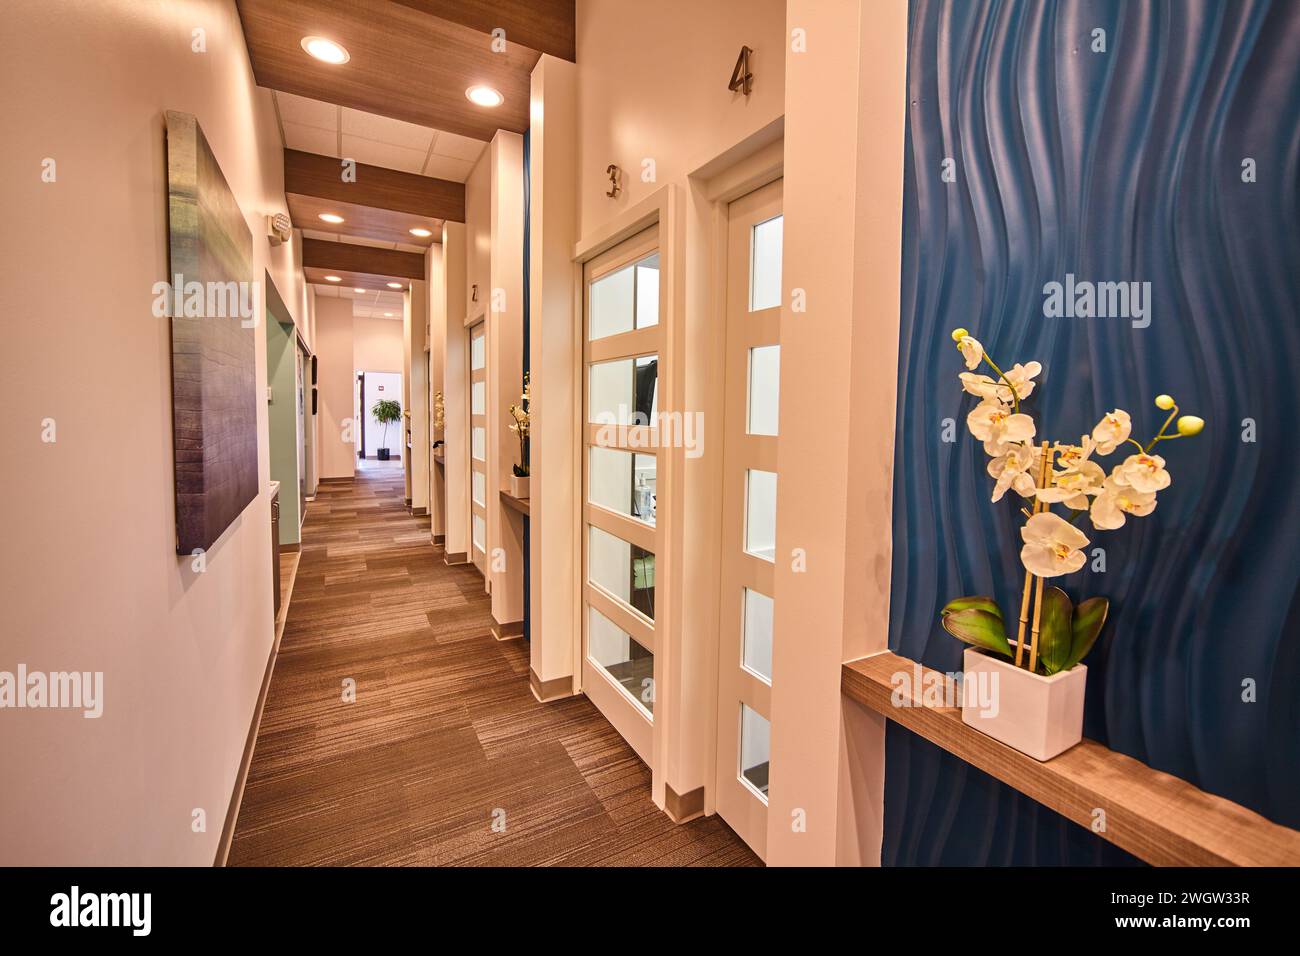 Moderno corridoio di uffici con decorazioni in stile Art & Orchidea, vista ad angolo basso Foto Stock